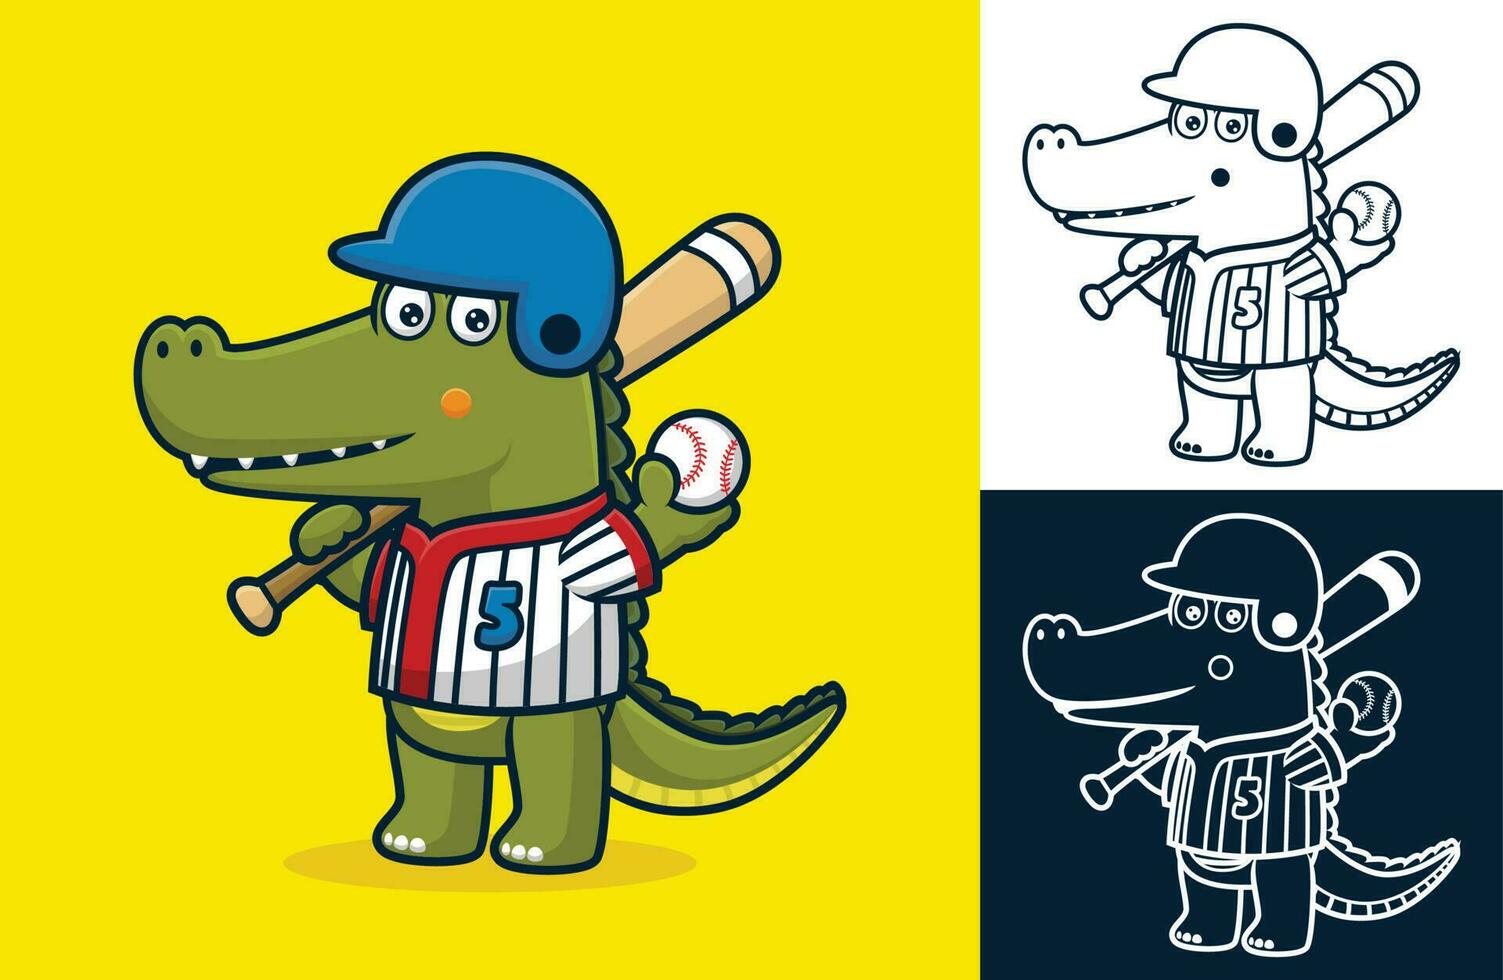 marrant crocodile dans base-ball uniforme avec base-ball chauve souris et balle. vecteur dessin animé illustration dans plat icône style